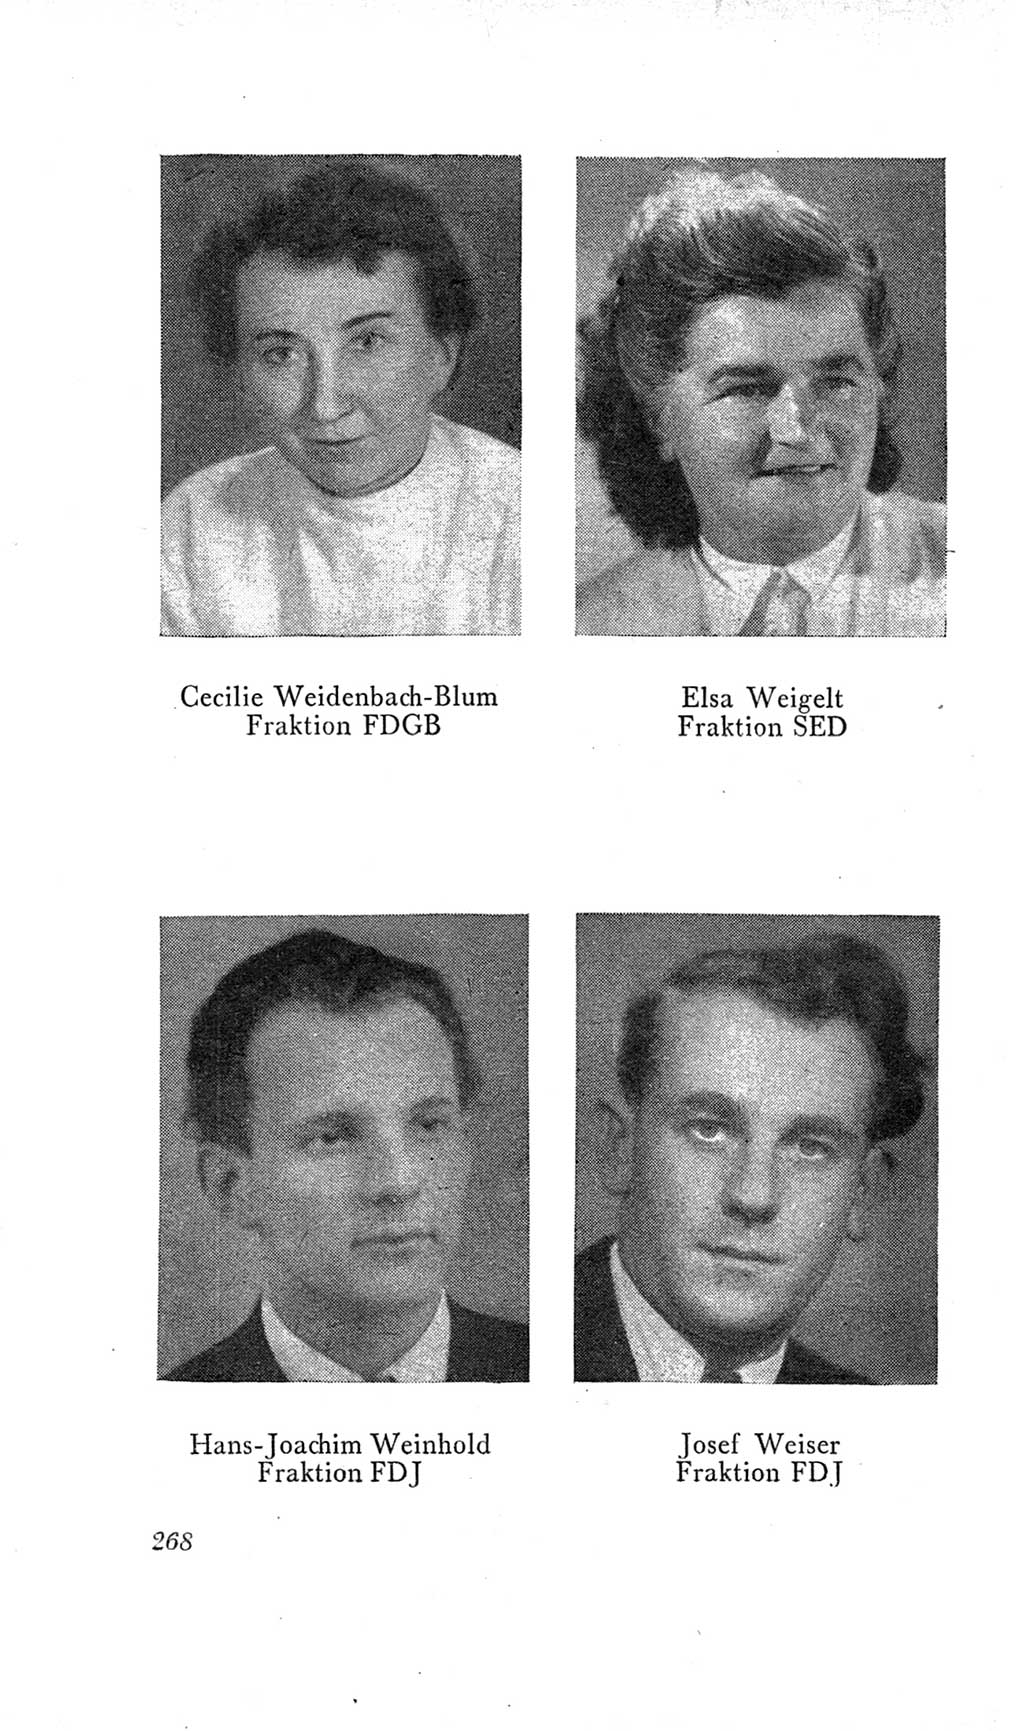 Handbuch der Volkskammer (VK) der Deutschen Demokratischen Republik (DDR), 2. Wahlperiode 1954-1958, Seite 268 (Hdb. VK. DDR, 2. WP. 1954-1958, S. 268)